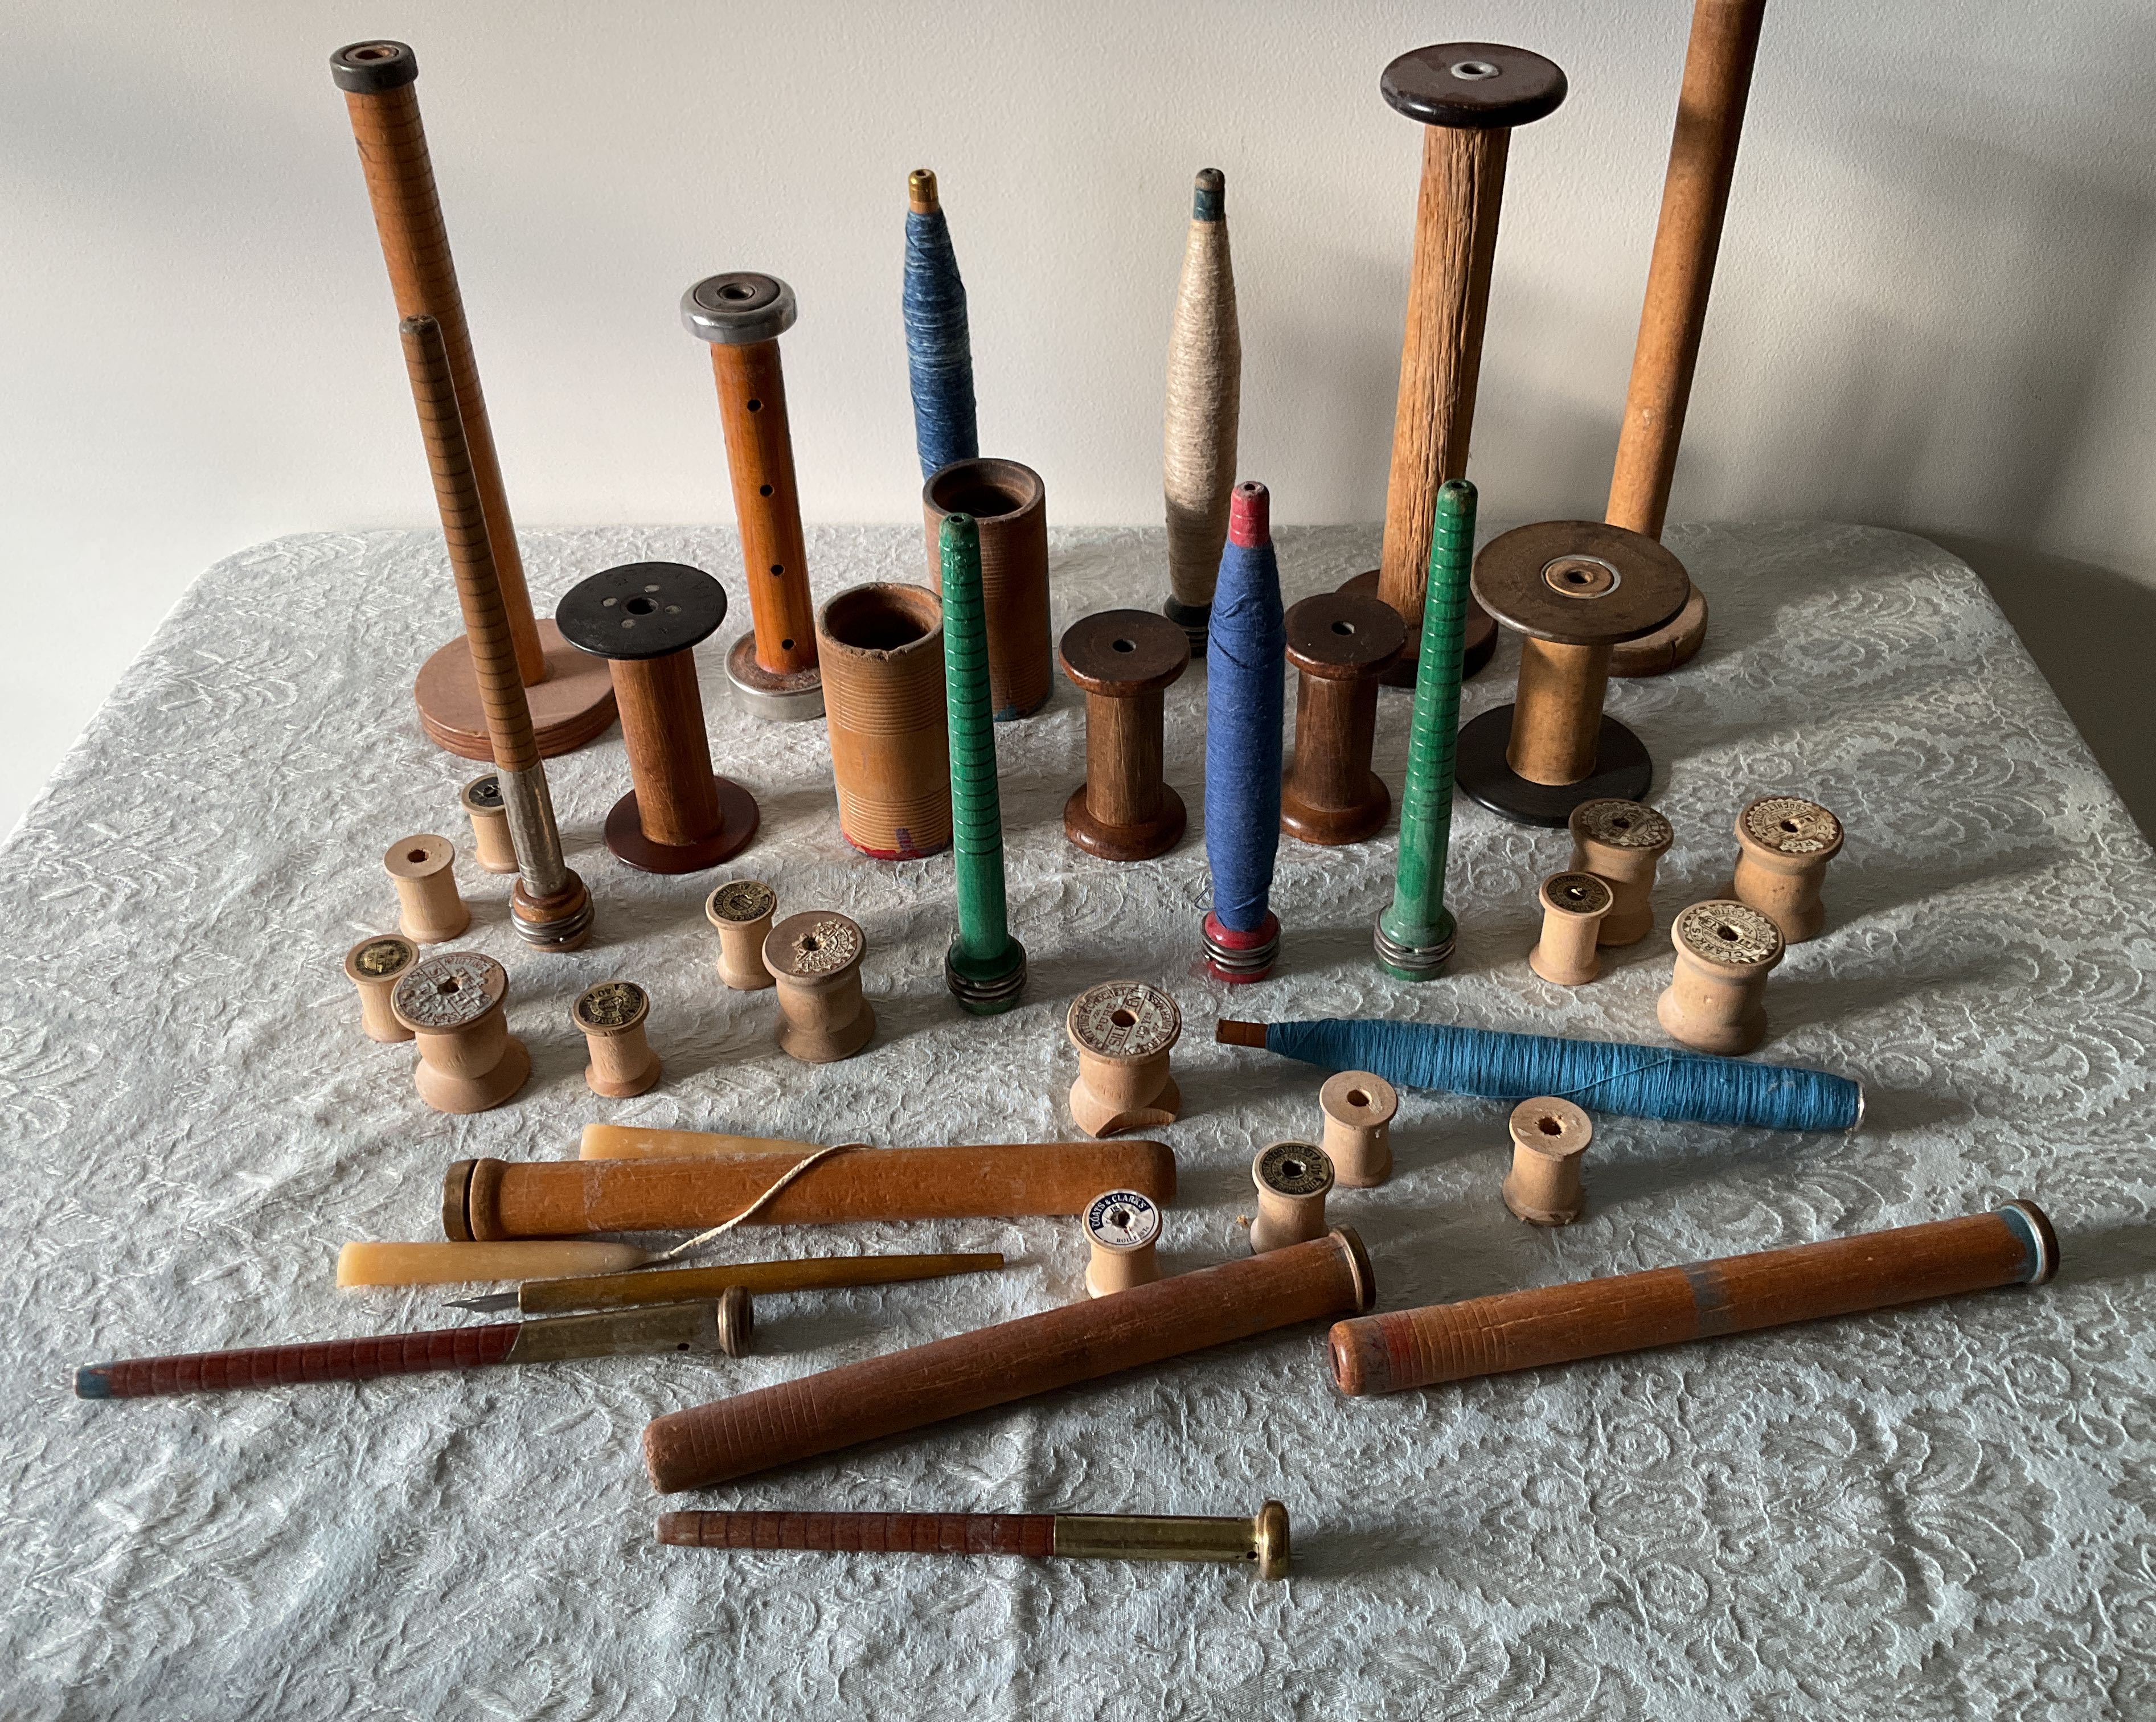 Antique-Wooden-Spools